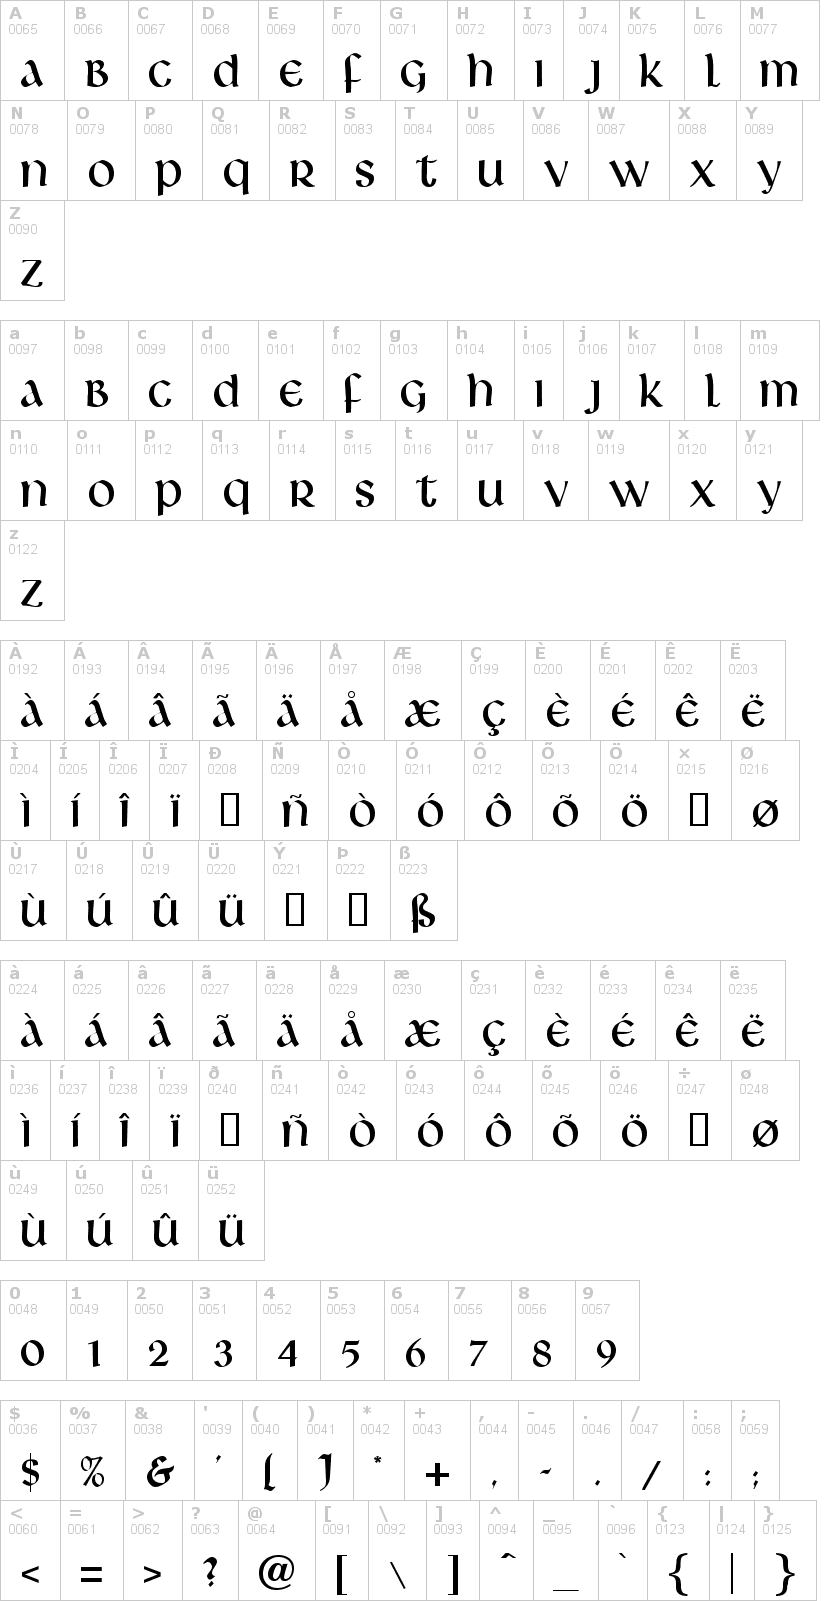 Lettere dell'alfabeto del font livingstone con le quali è possibile realizzare adesivi prespaziati